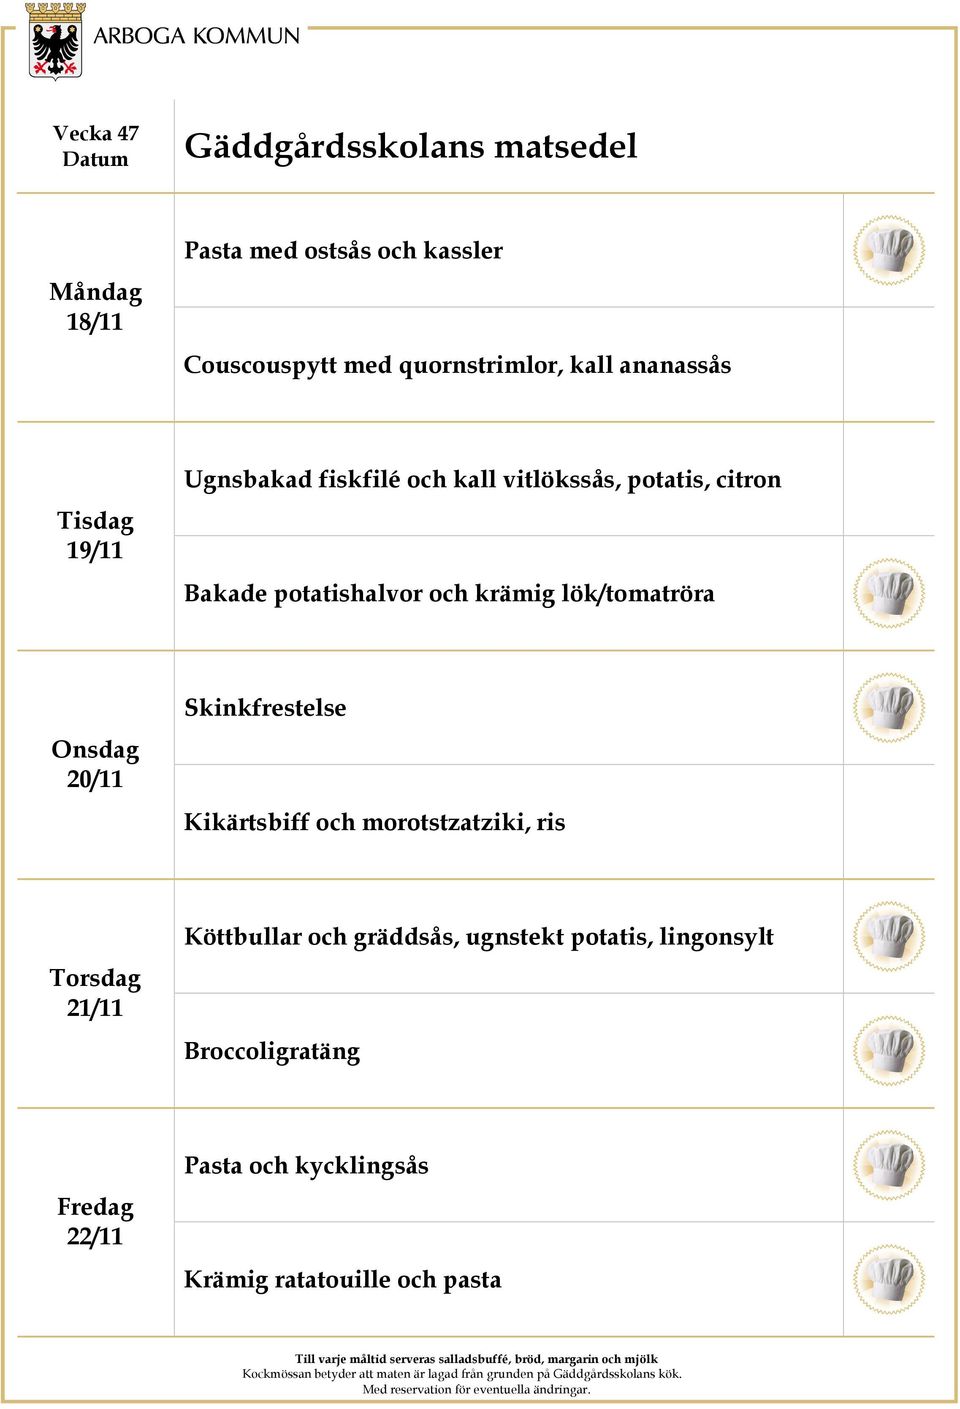 lök/tomatröra 20/11 Skinkfrestelse Kikärtsbiff och morotstzatziki, ris 21/11 Köttbullar och